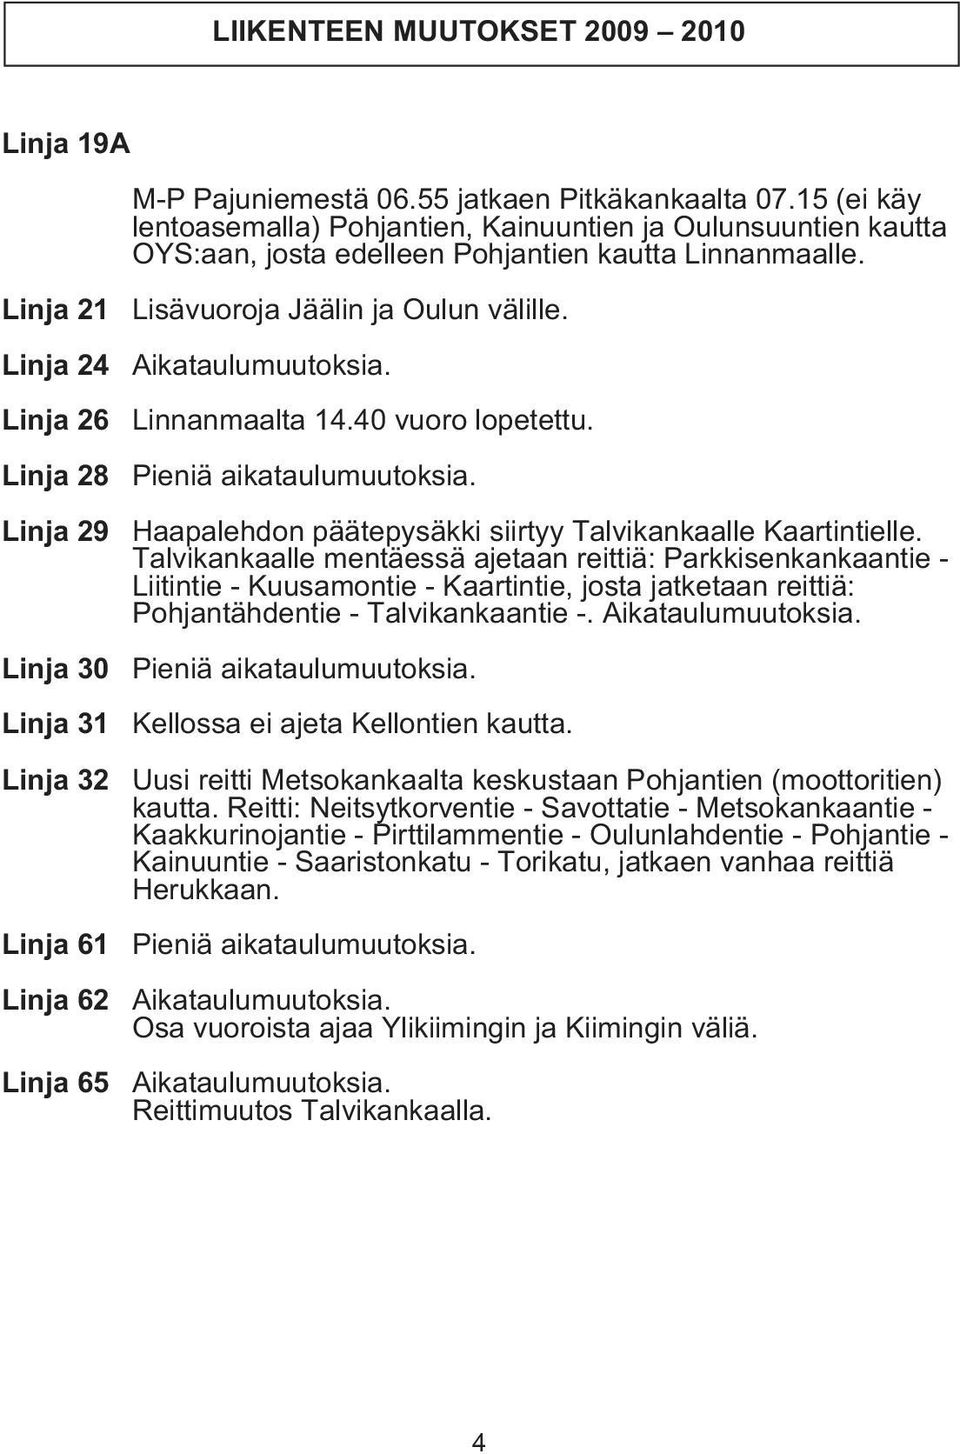 Linja 21 Linja 24 Linja 26 Linja 28 Linja 29 Linja 30 Linja 31 Linja 32 Linja 61 Linja 62 Linja 65 Lisävuoroja Jäälin ja Oulun välille. Aikataulumuutoksia. Linnanmaalta 14.40 vuoro lopetettu.